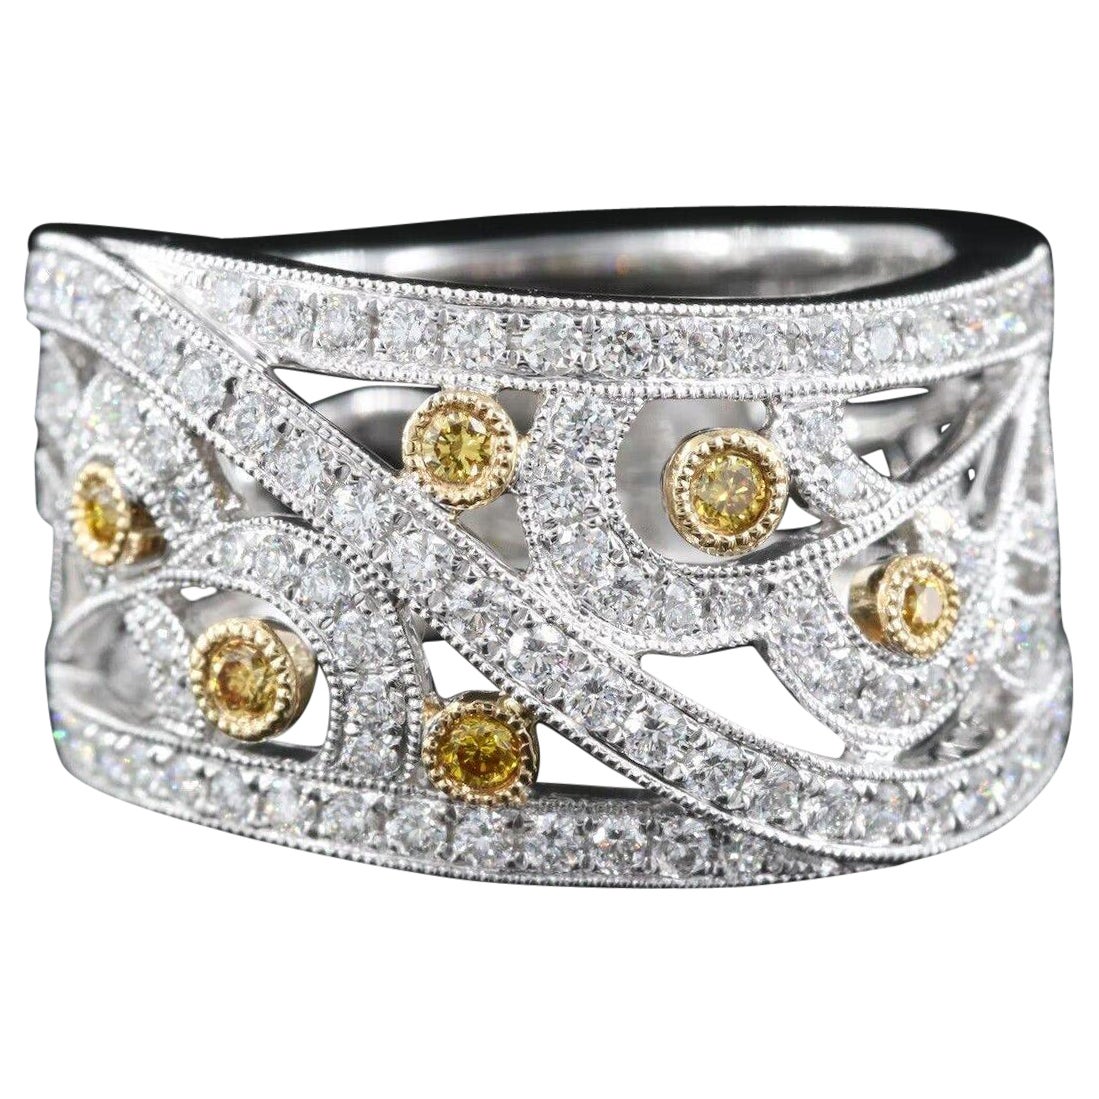 $9500 / New / Jye’s Designer 1.03 Ct Diamond Ring / 18K White Gold / Super Fancy